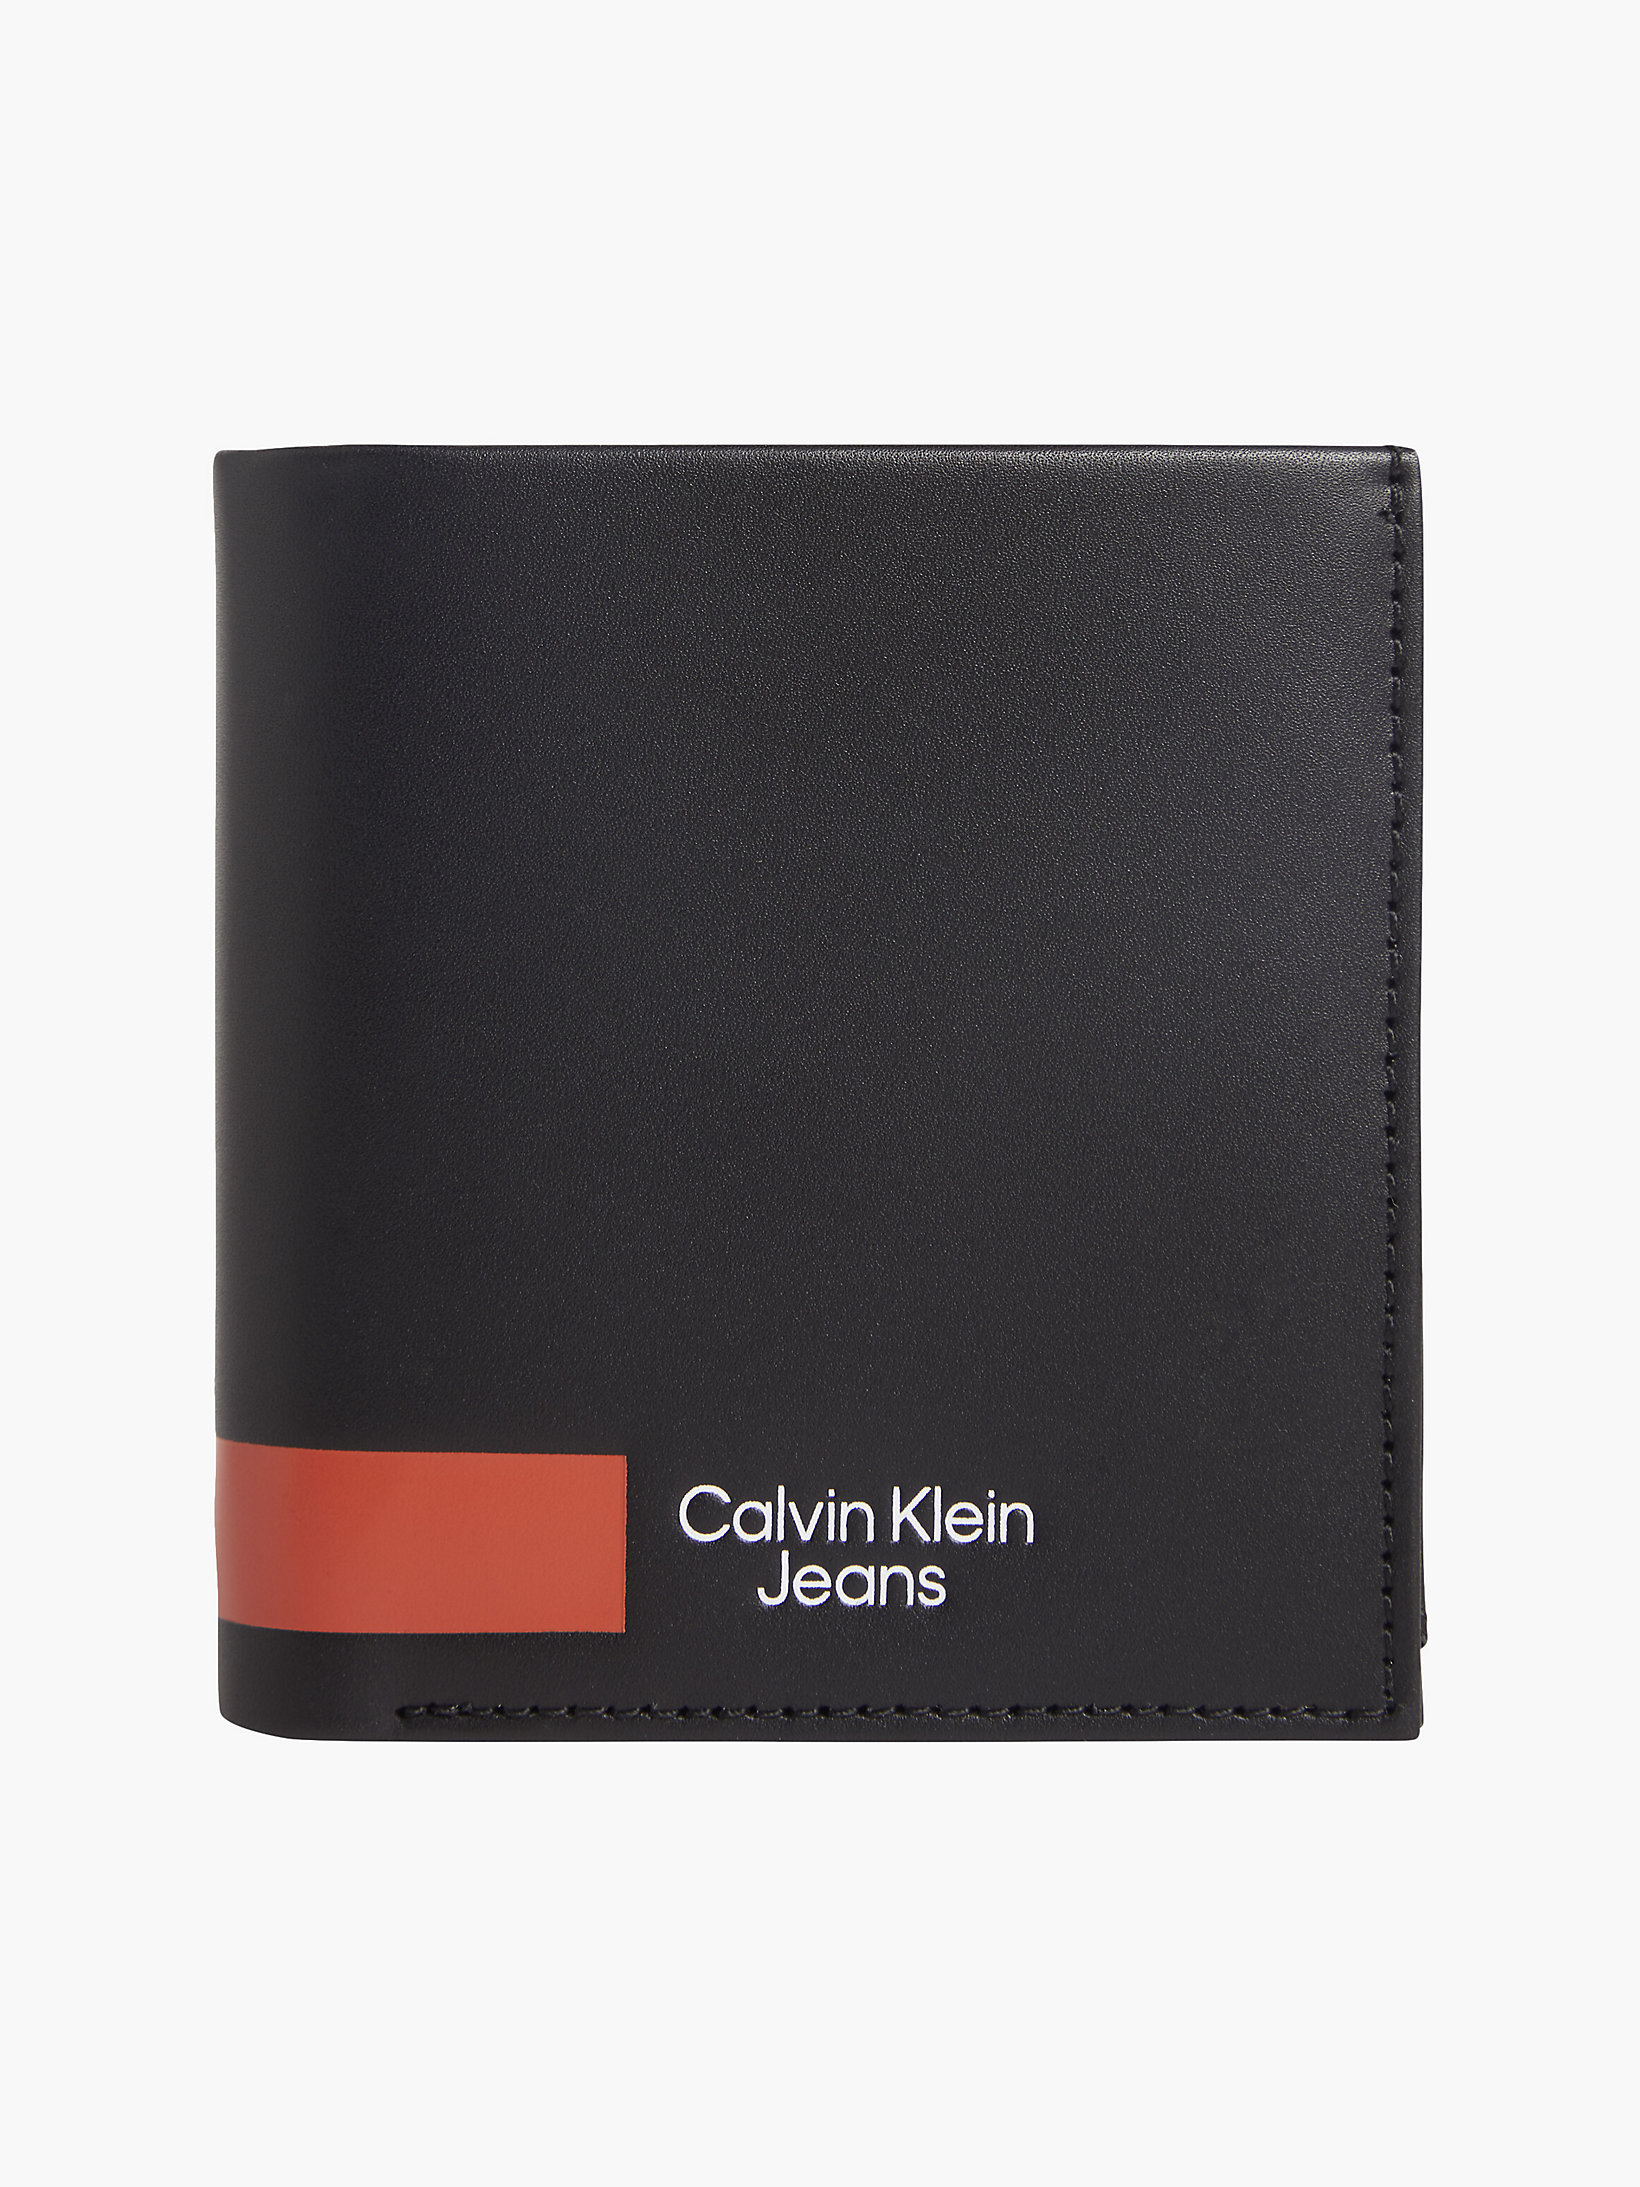 Black > Dreifach Faltbares Lederportemonnaie > undefined Herren - Calvin Klein